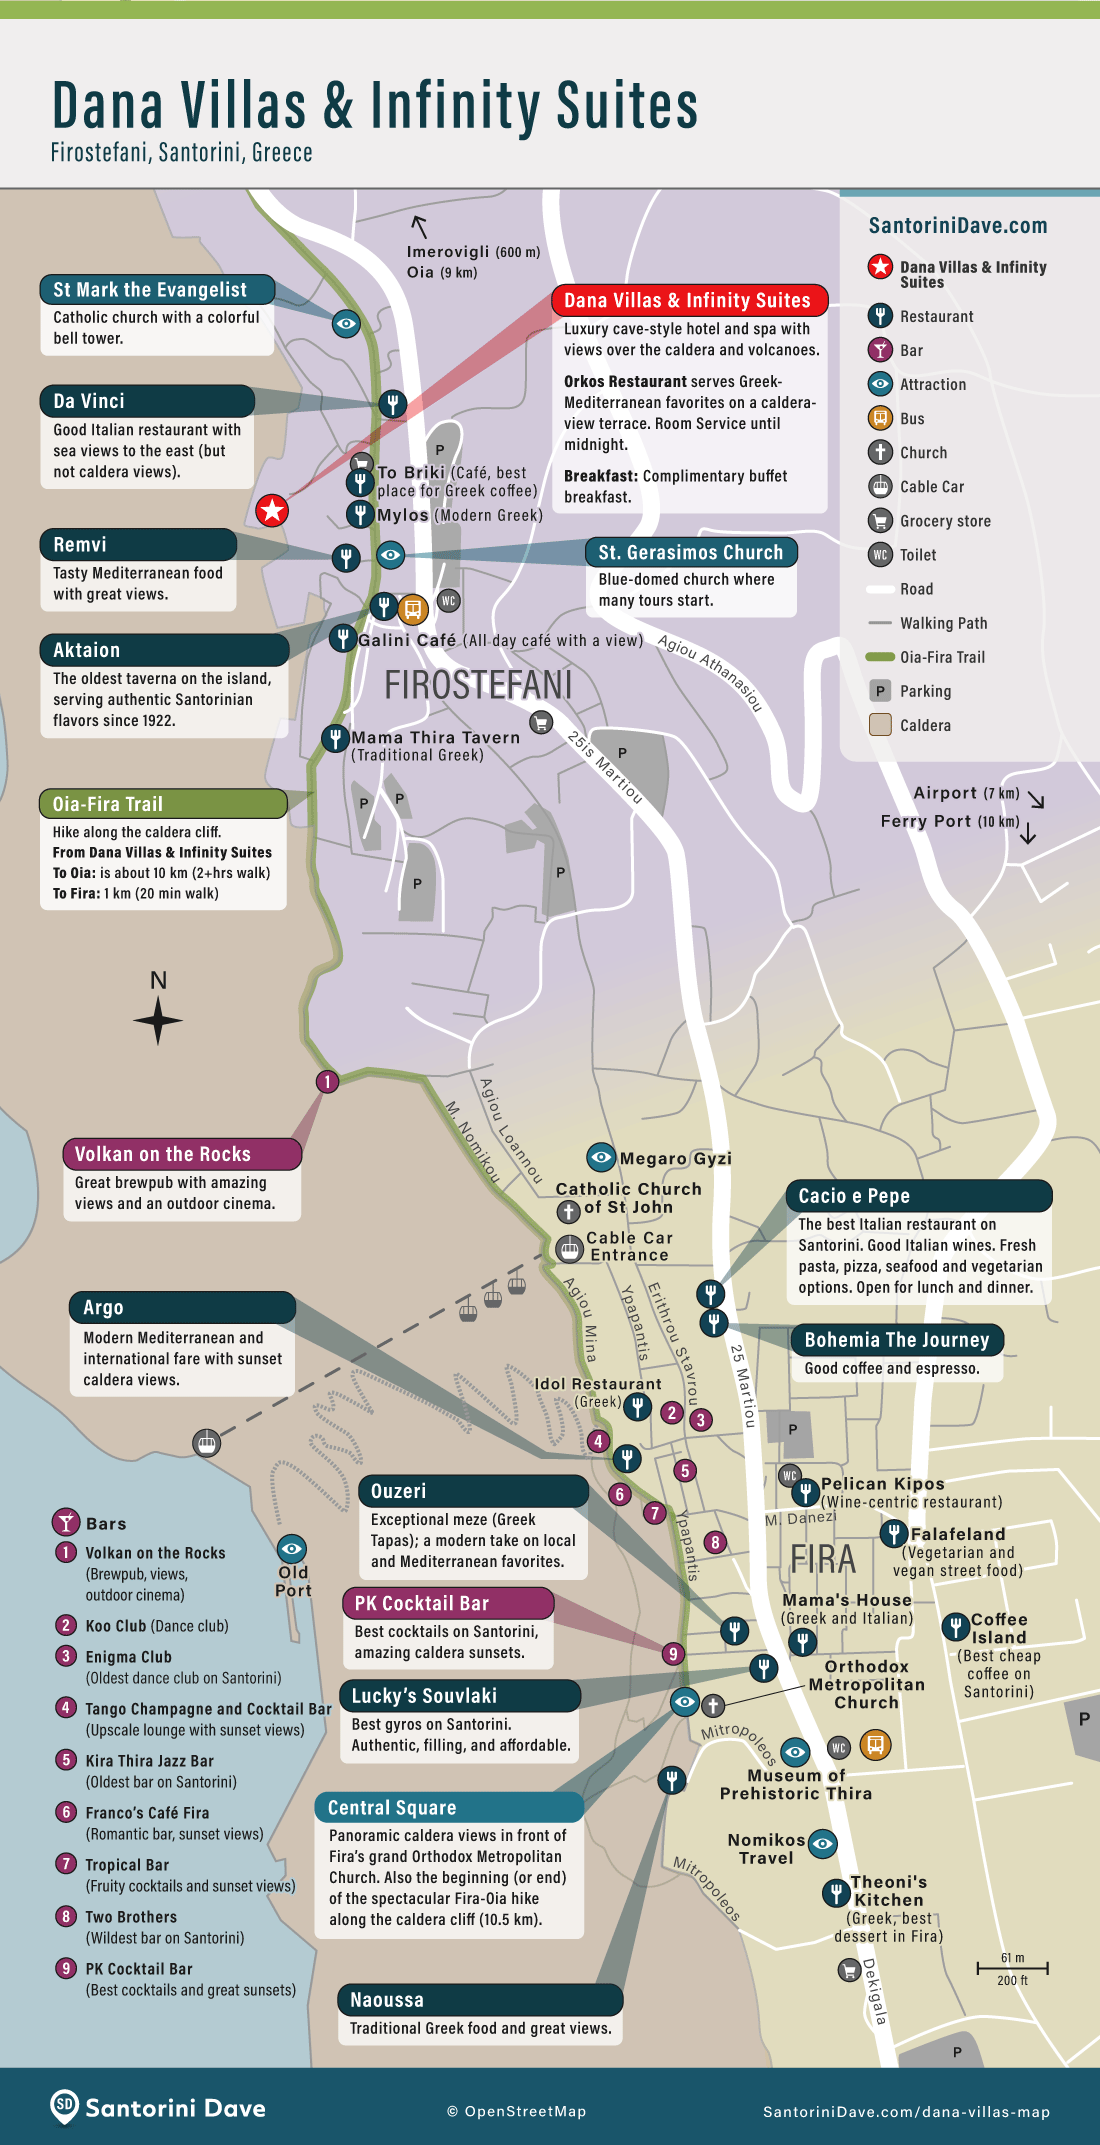 Map of Dana Villas & Infinity Suites, attractions, and restaurants in Firostefani, Santorini.